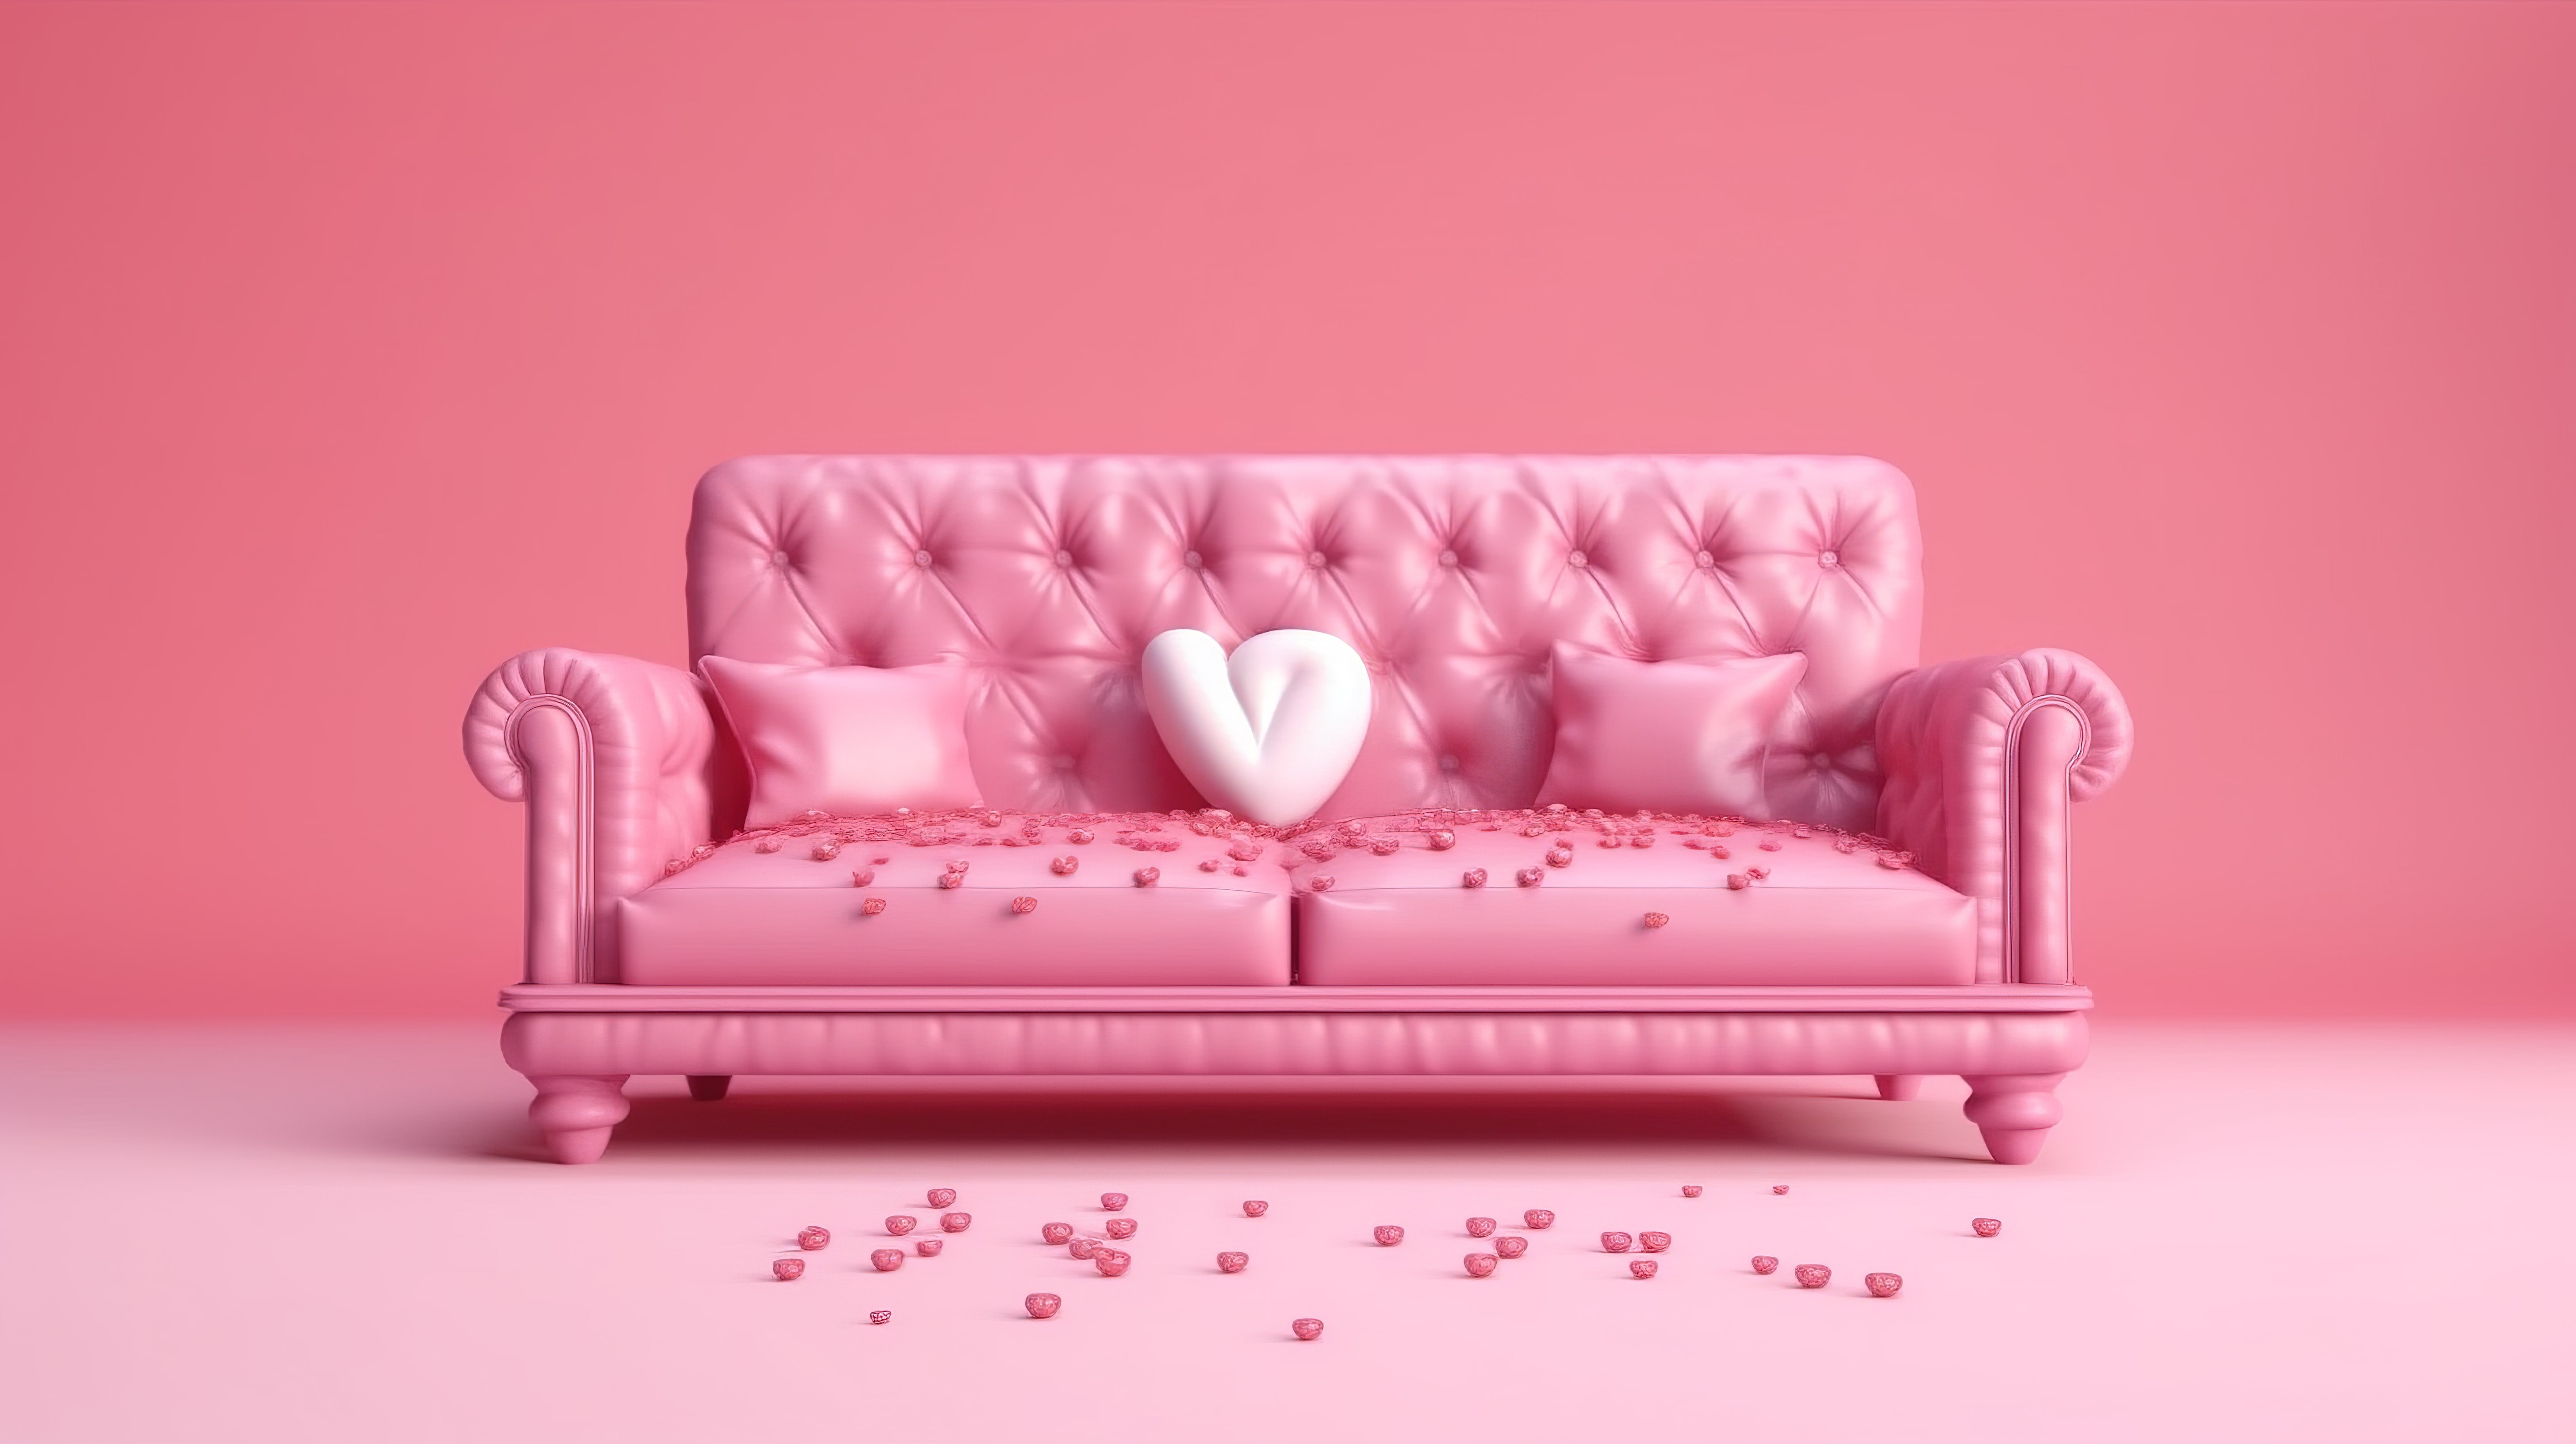 空气中弥漫着爱，用心形气球和背景 3D 渲染中的粉红色沙发庆祝情人节图片